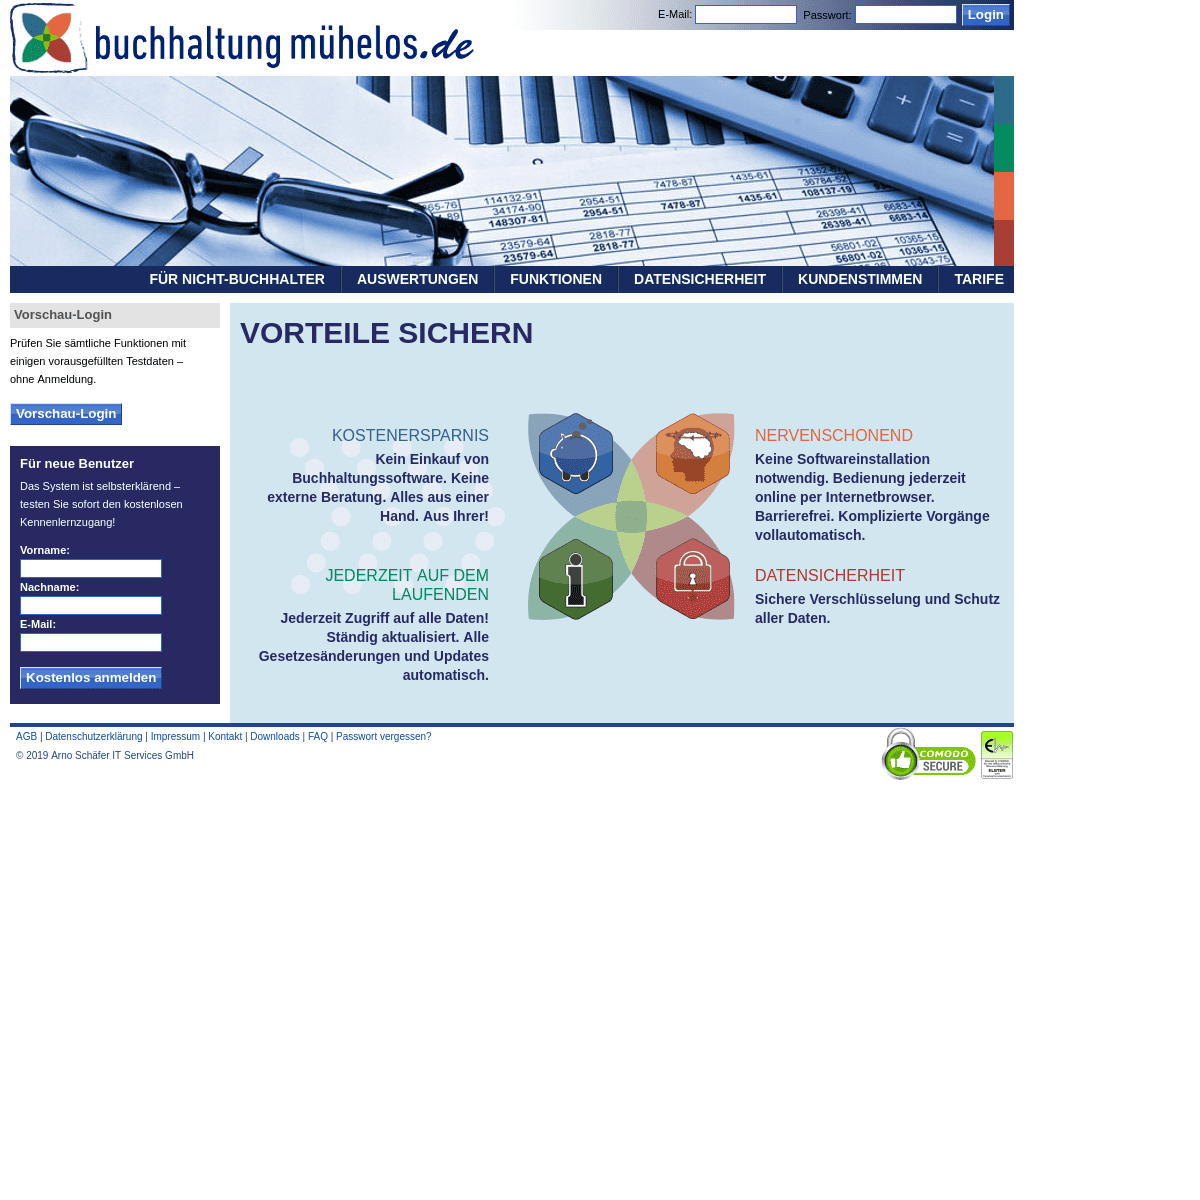 Buchhaltung-mühelos.de | Online für Freiberufler & Selbständige